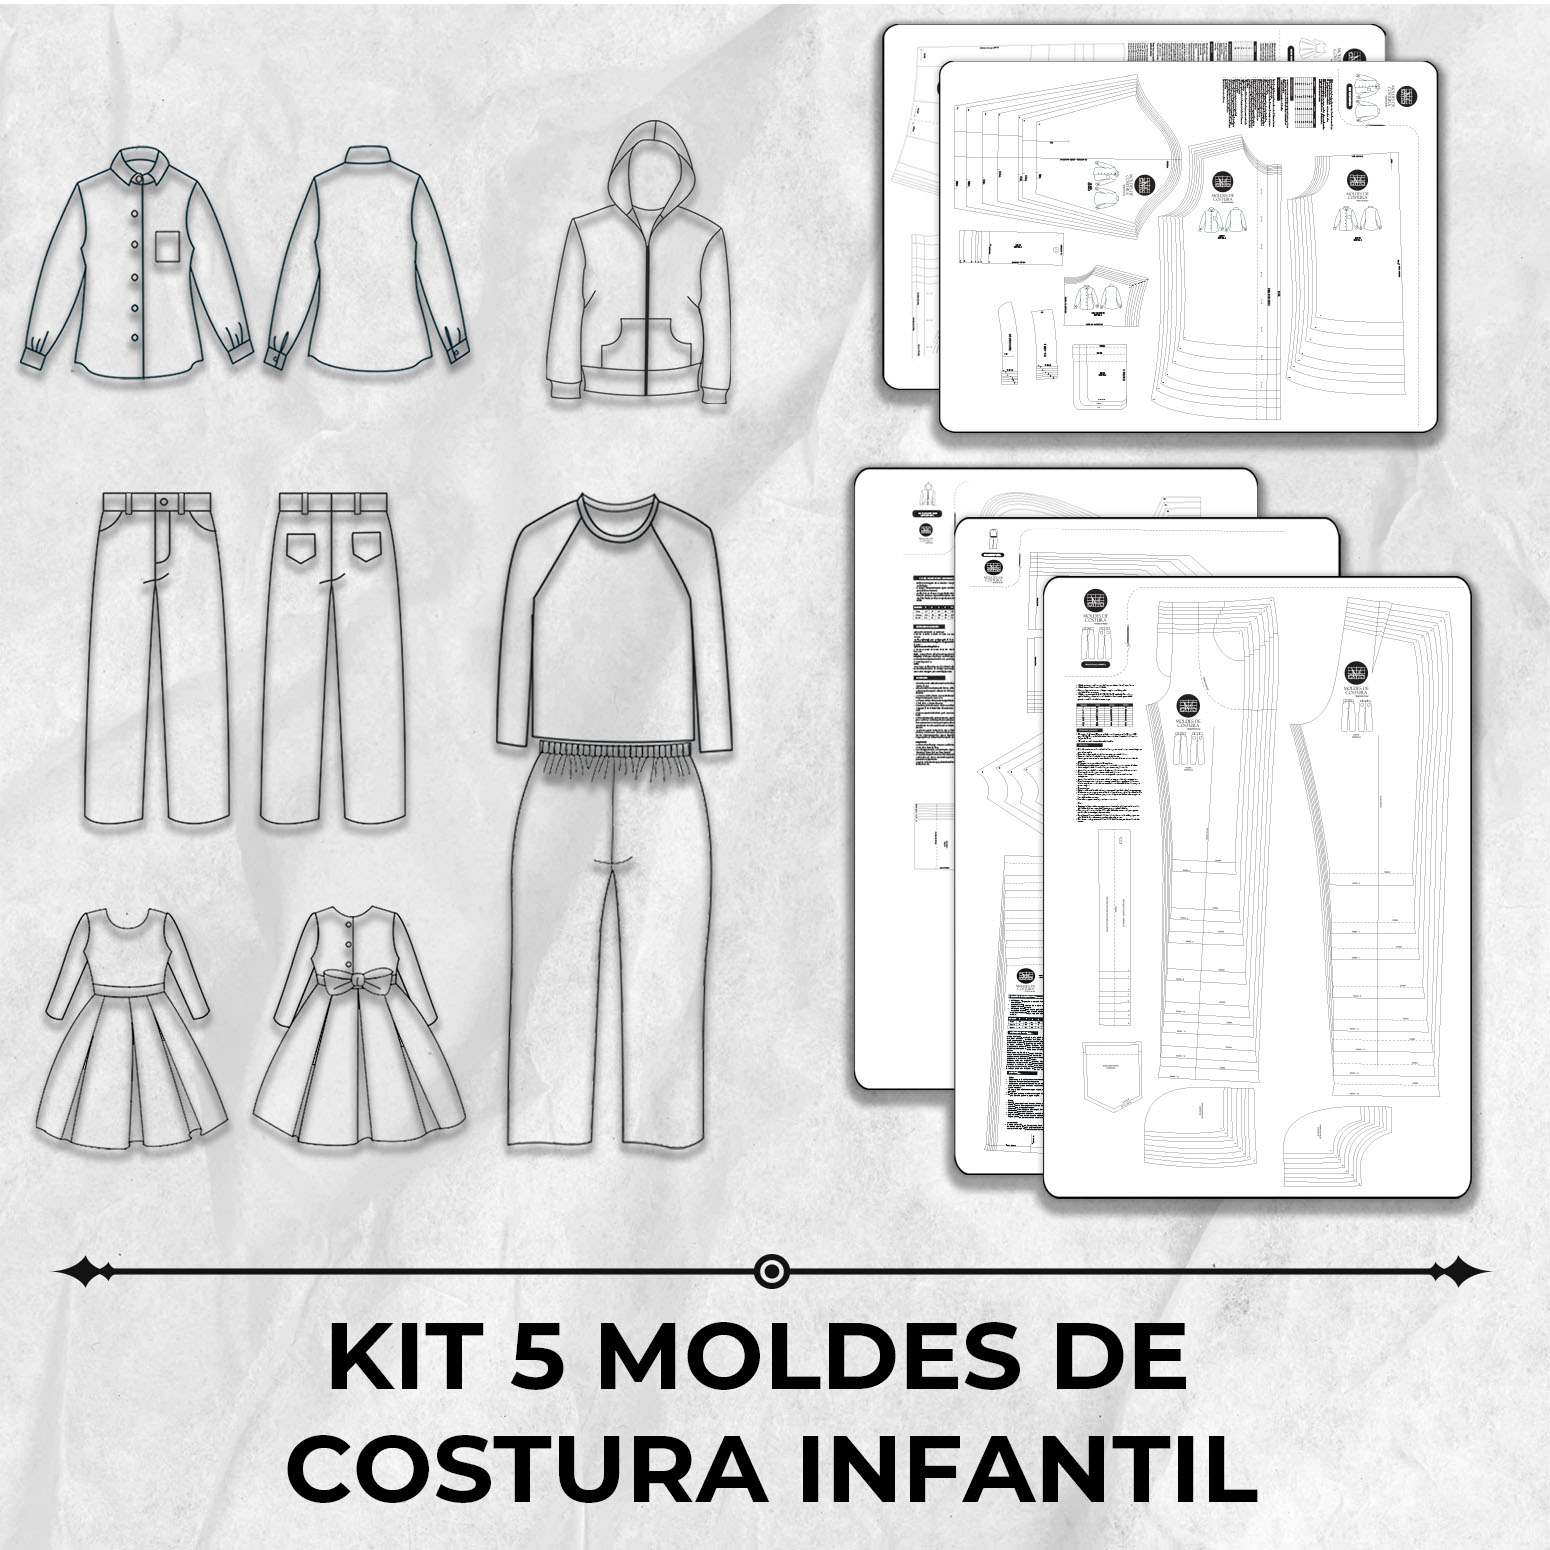 Kit 5 moldes de costura infantil by Marlene Mukai